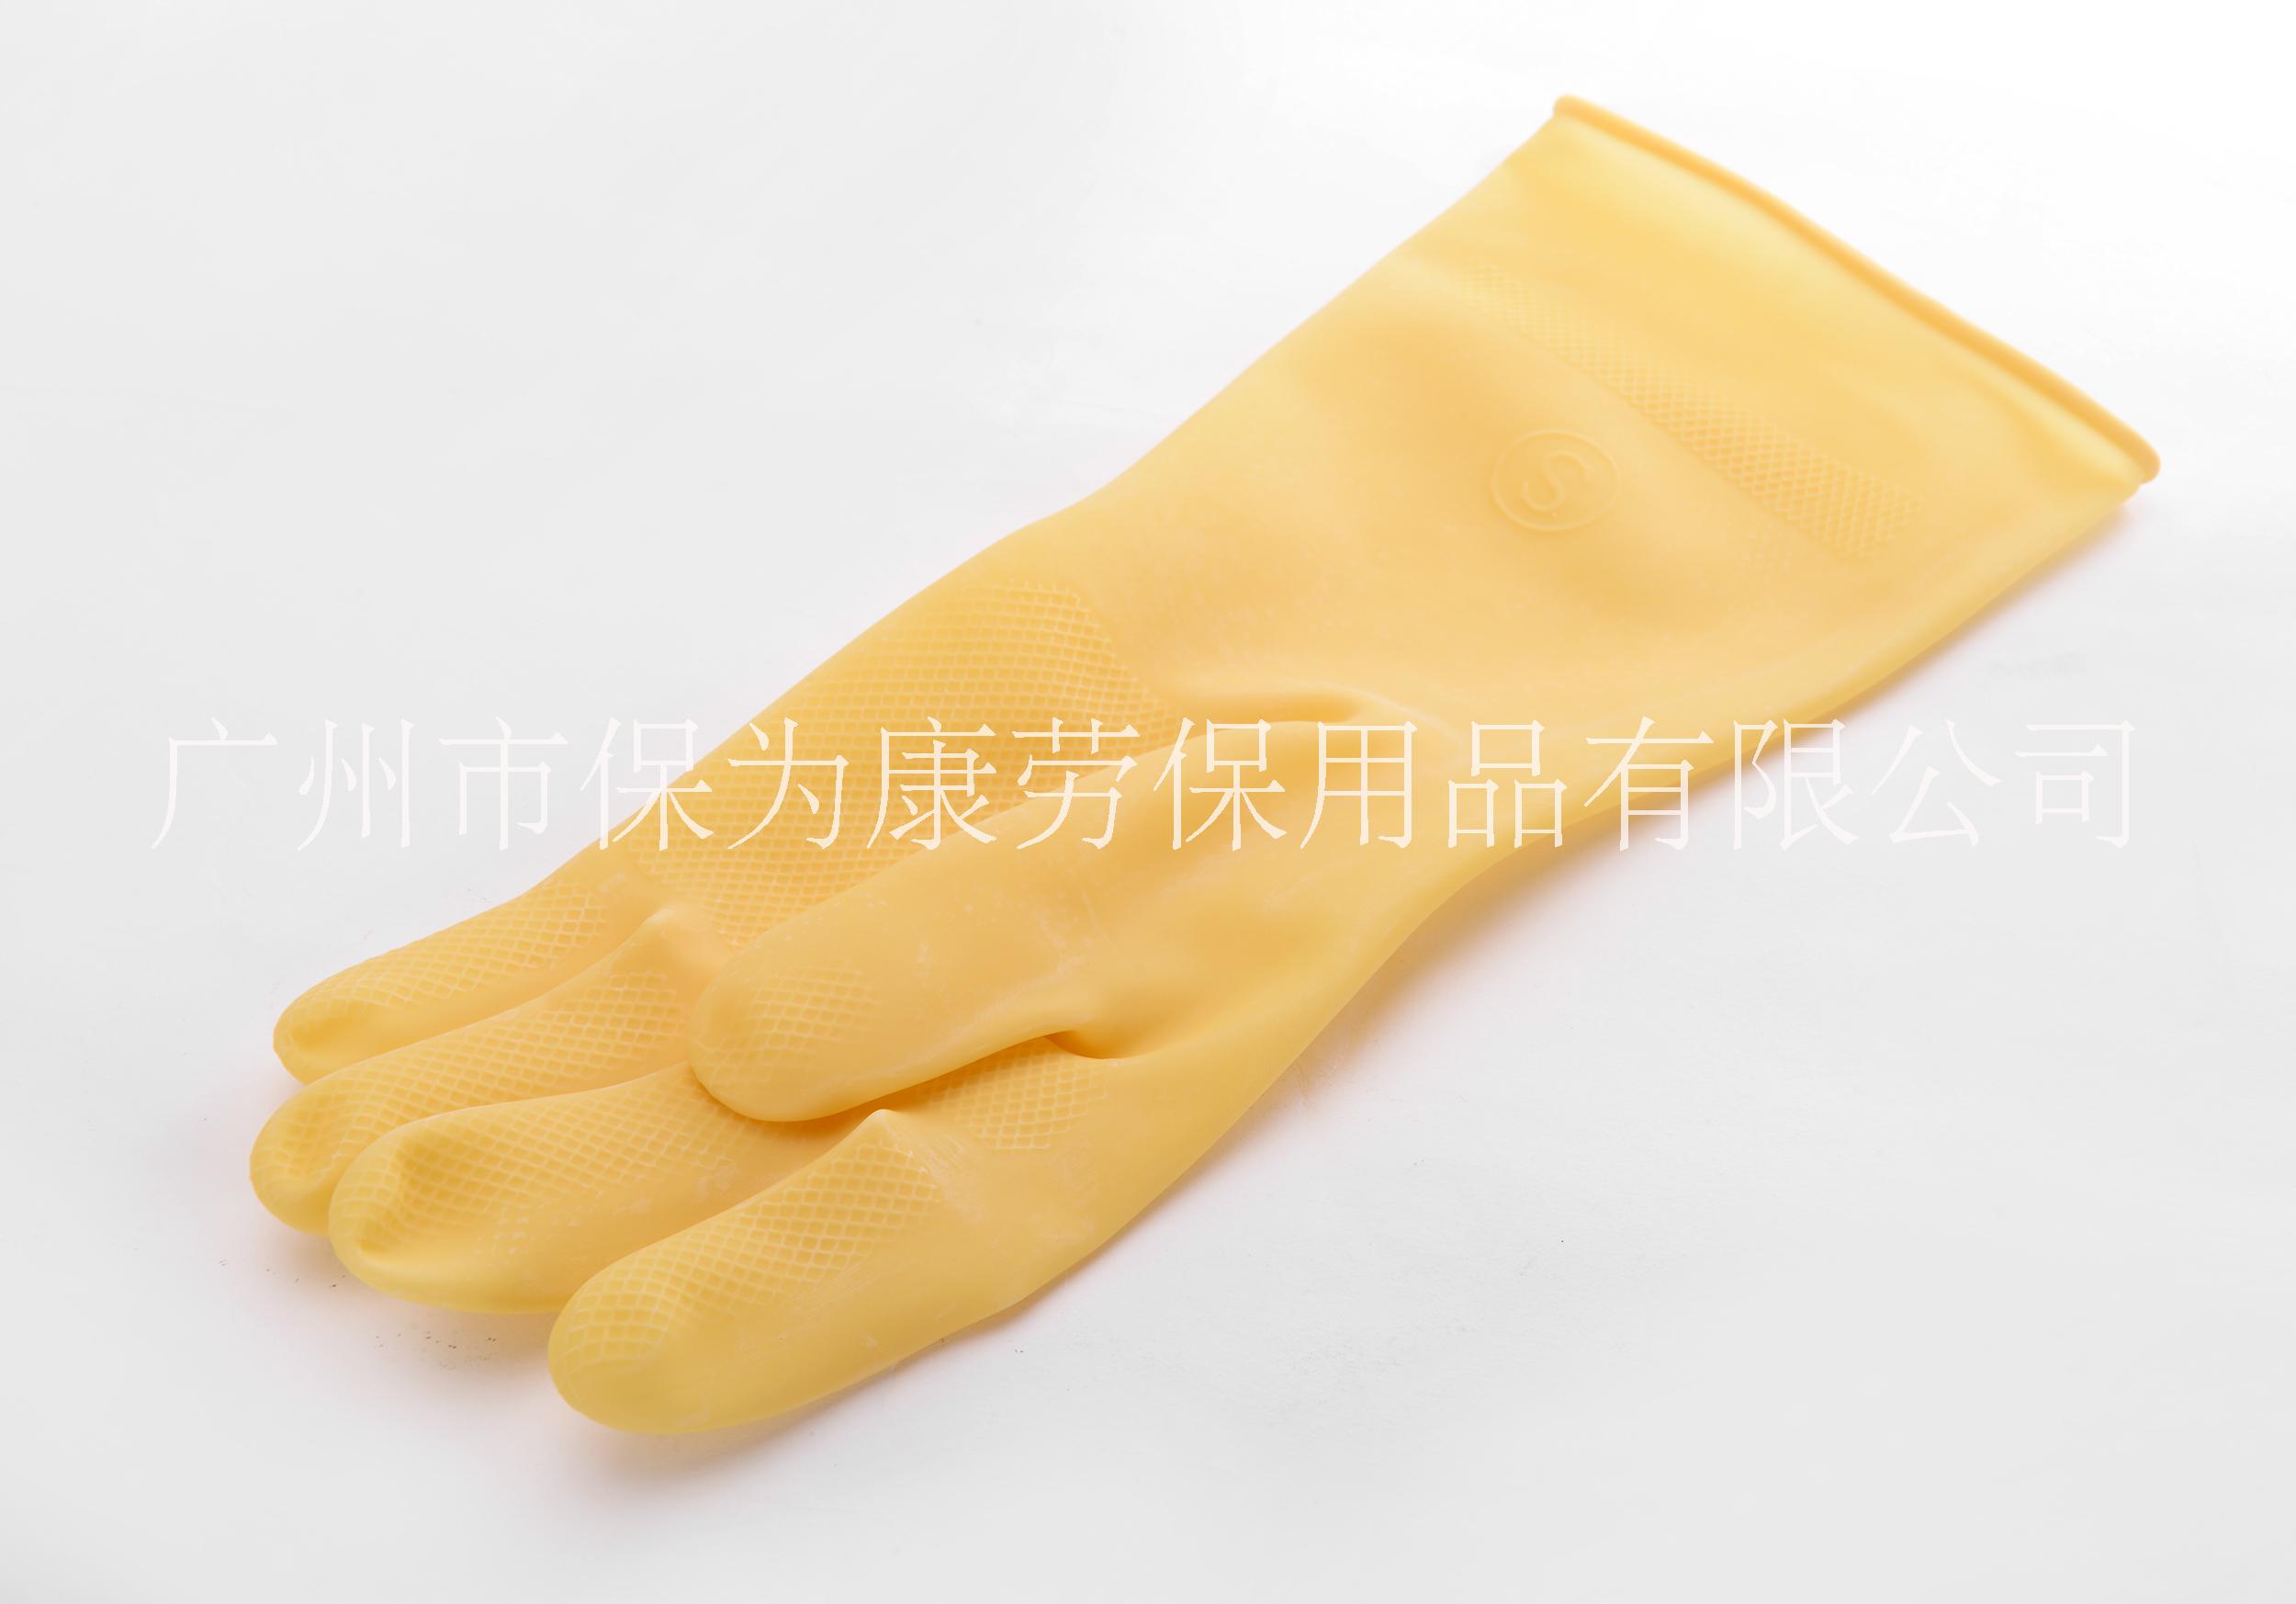 厂家直销保为康加厚乳胶防酸碱抗毒防污家用清洁工业用手套批发k001 k001乳胶手套